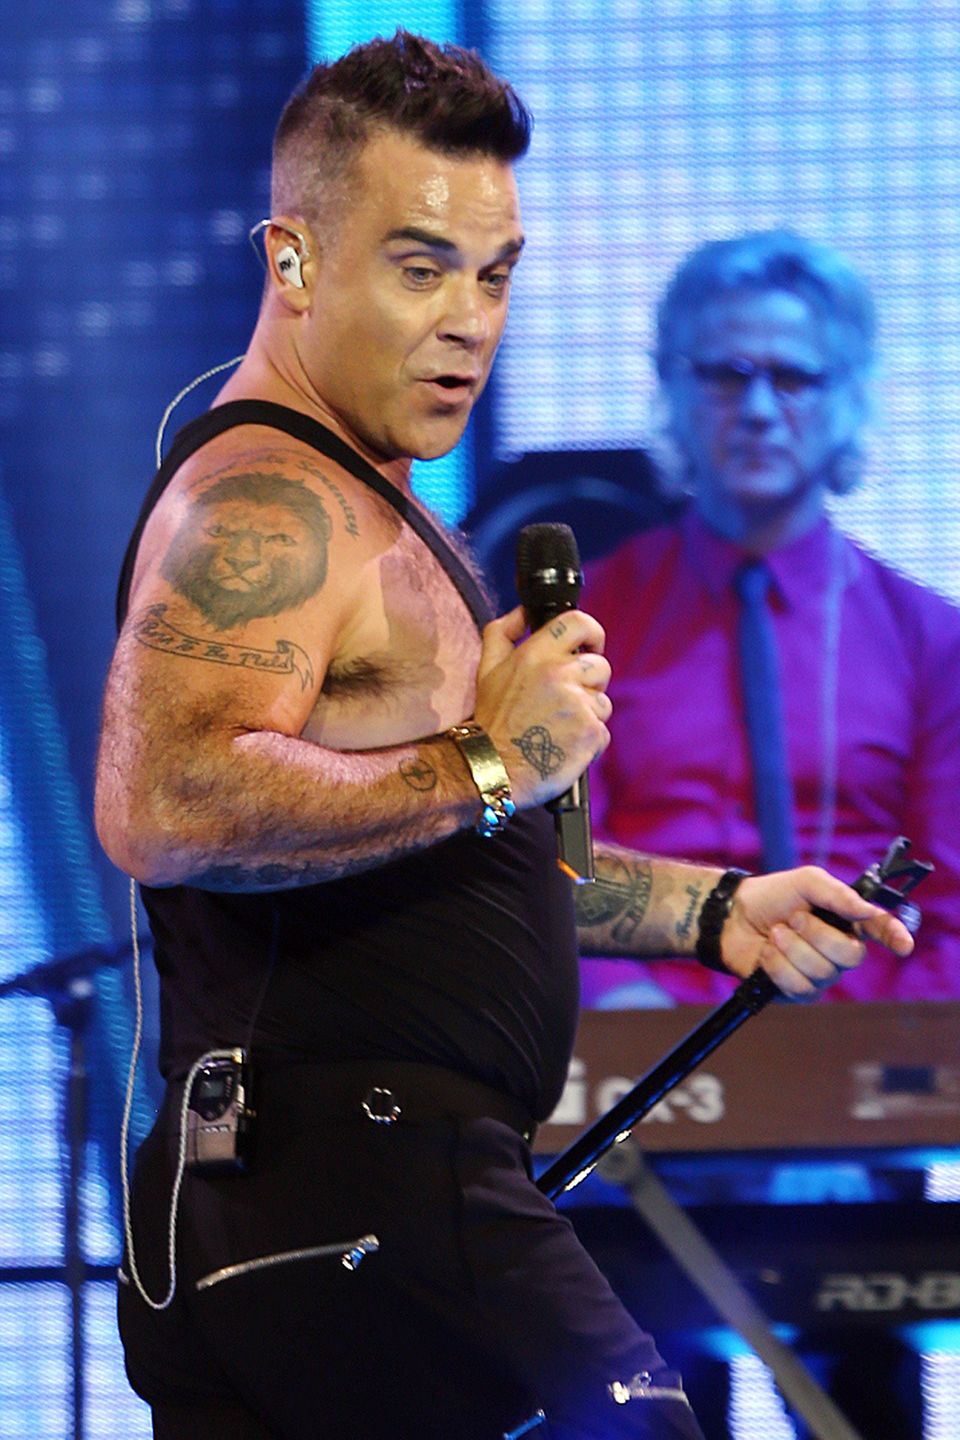 Im Jahr 2015 rockt Robbie Williams die Bühne im australischen Perth. Im hautengen Tanktop ist die damalige Figur des Sängers gut zu erkennen und es zeichnet sich ein kleines Bäuchlein ab. Doch so sieht der 45-Jährige nun nicht mehr aus ...